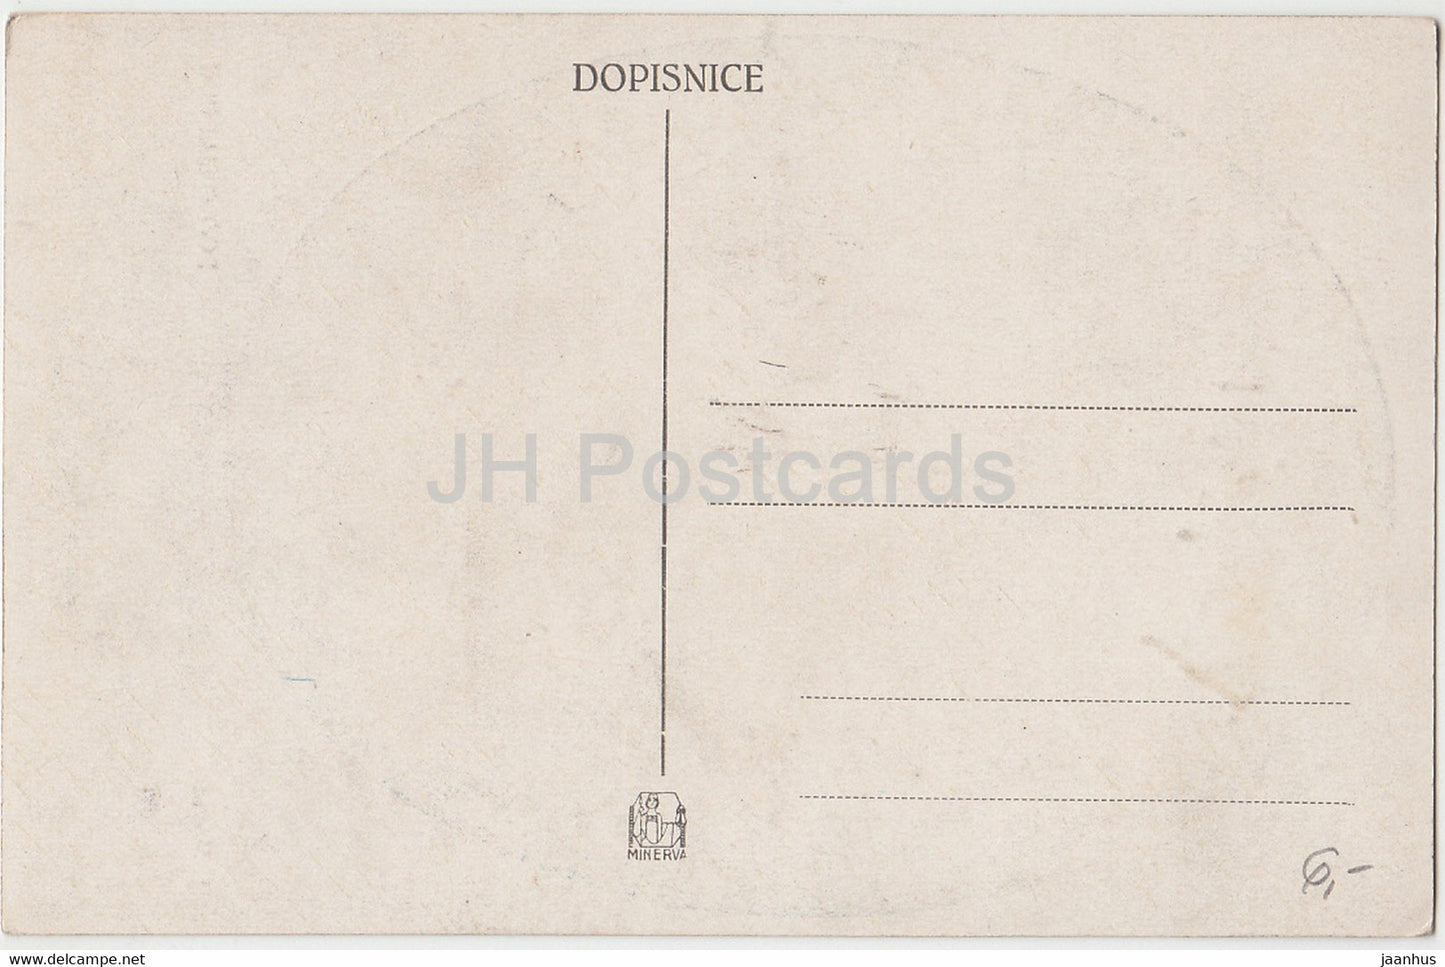 Gemälde von J. Manes – Pod Chalupou – alte Postkarte – tschechische Kunst – Tschechische Republik – unbenutzt